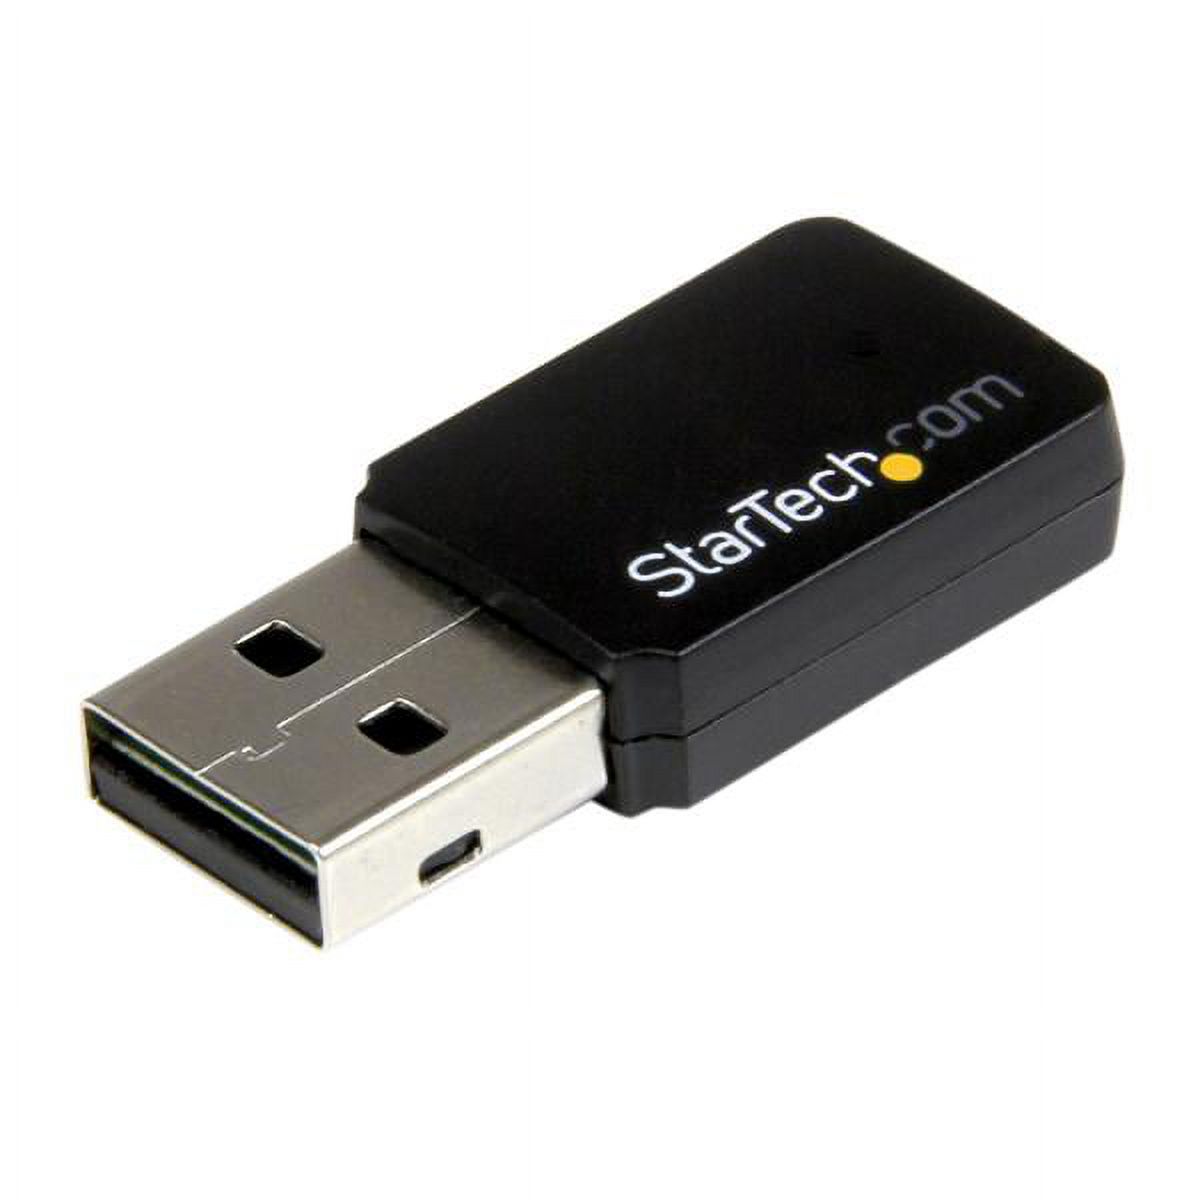 StarTech.com USB 2.0 AC600 Mini Dual Band Wireless-AC Network Adapter - 1T1R 802.11ac WiFi Adapter - 2.4GHz / 5GHz USB Wireless (USB433WACDB), Black - image 2 of 5